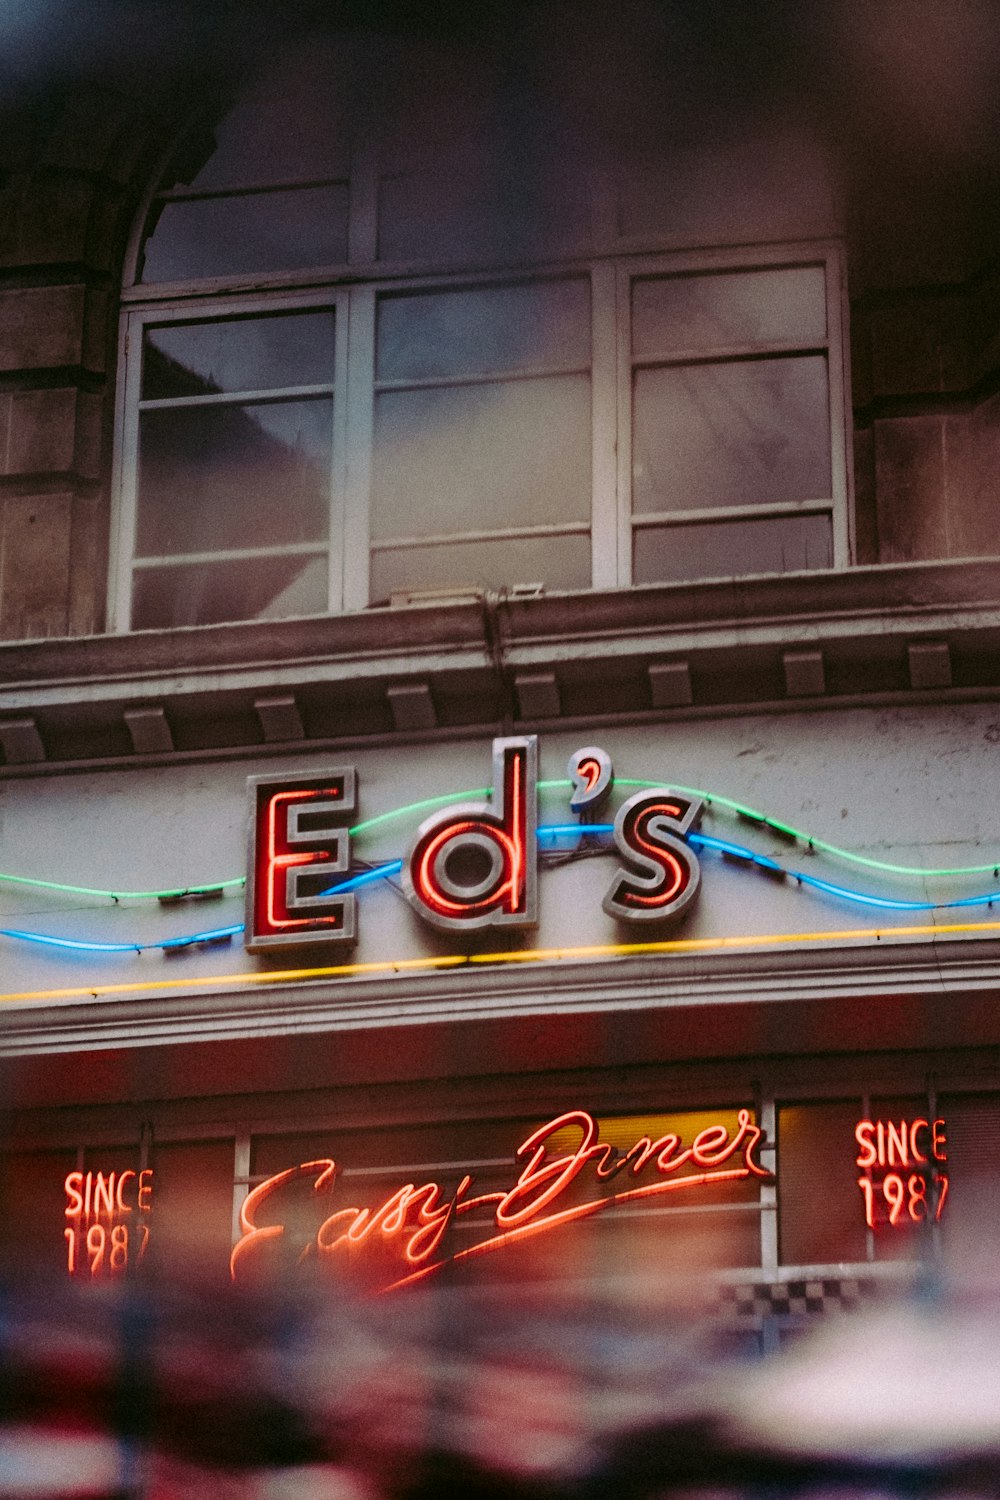 Ed's signage